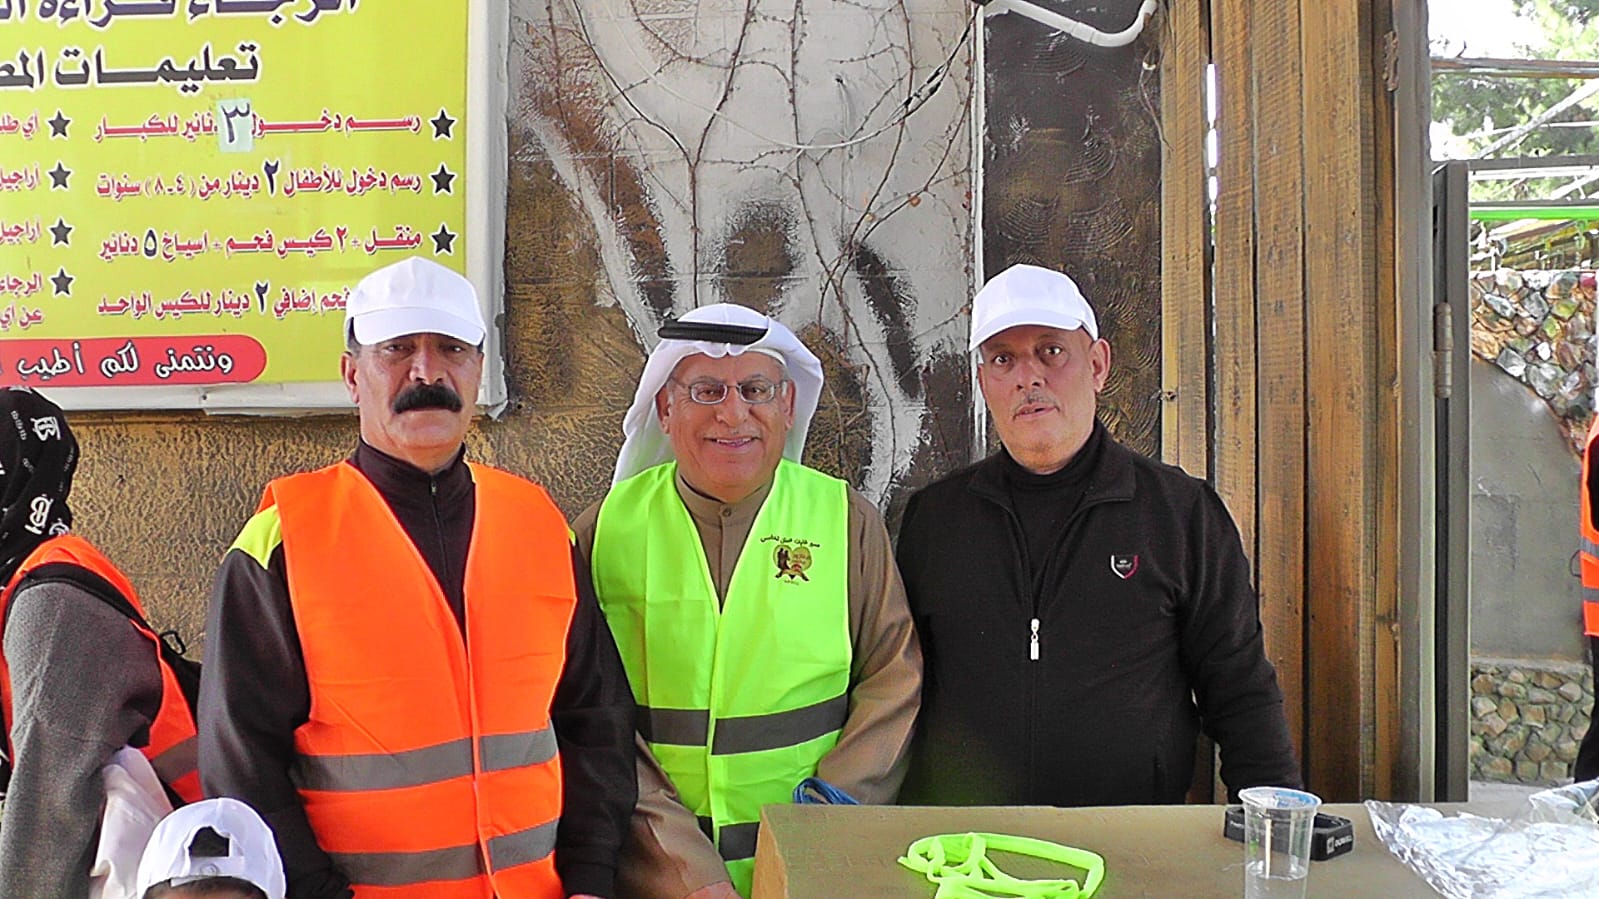 بالصور : مبادرة لمسة عمان مستمرة بإطلاق مسير غابات عمان